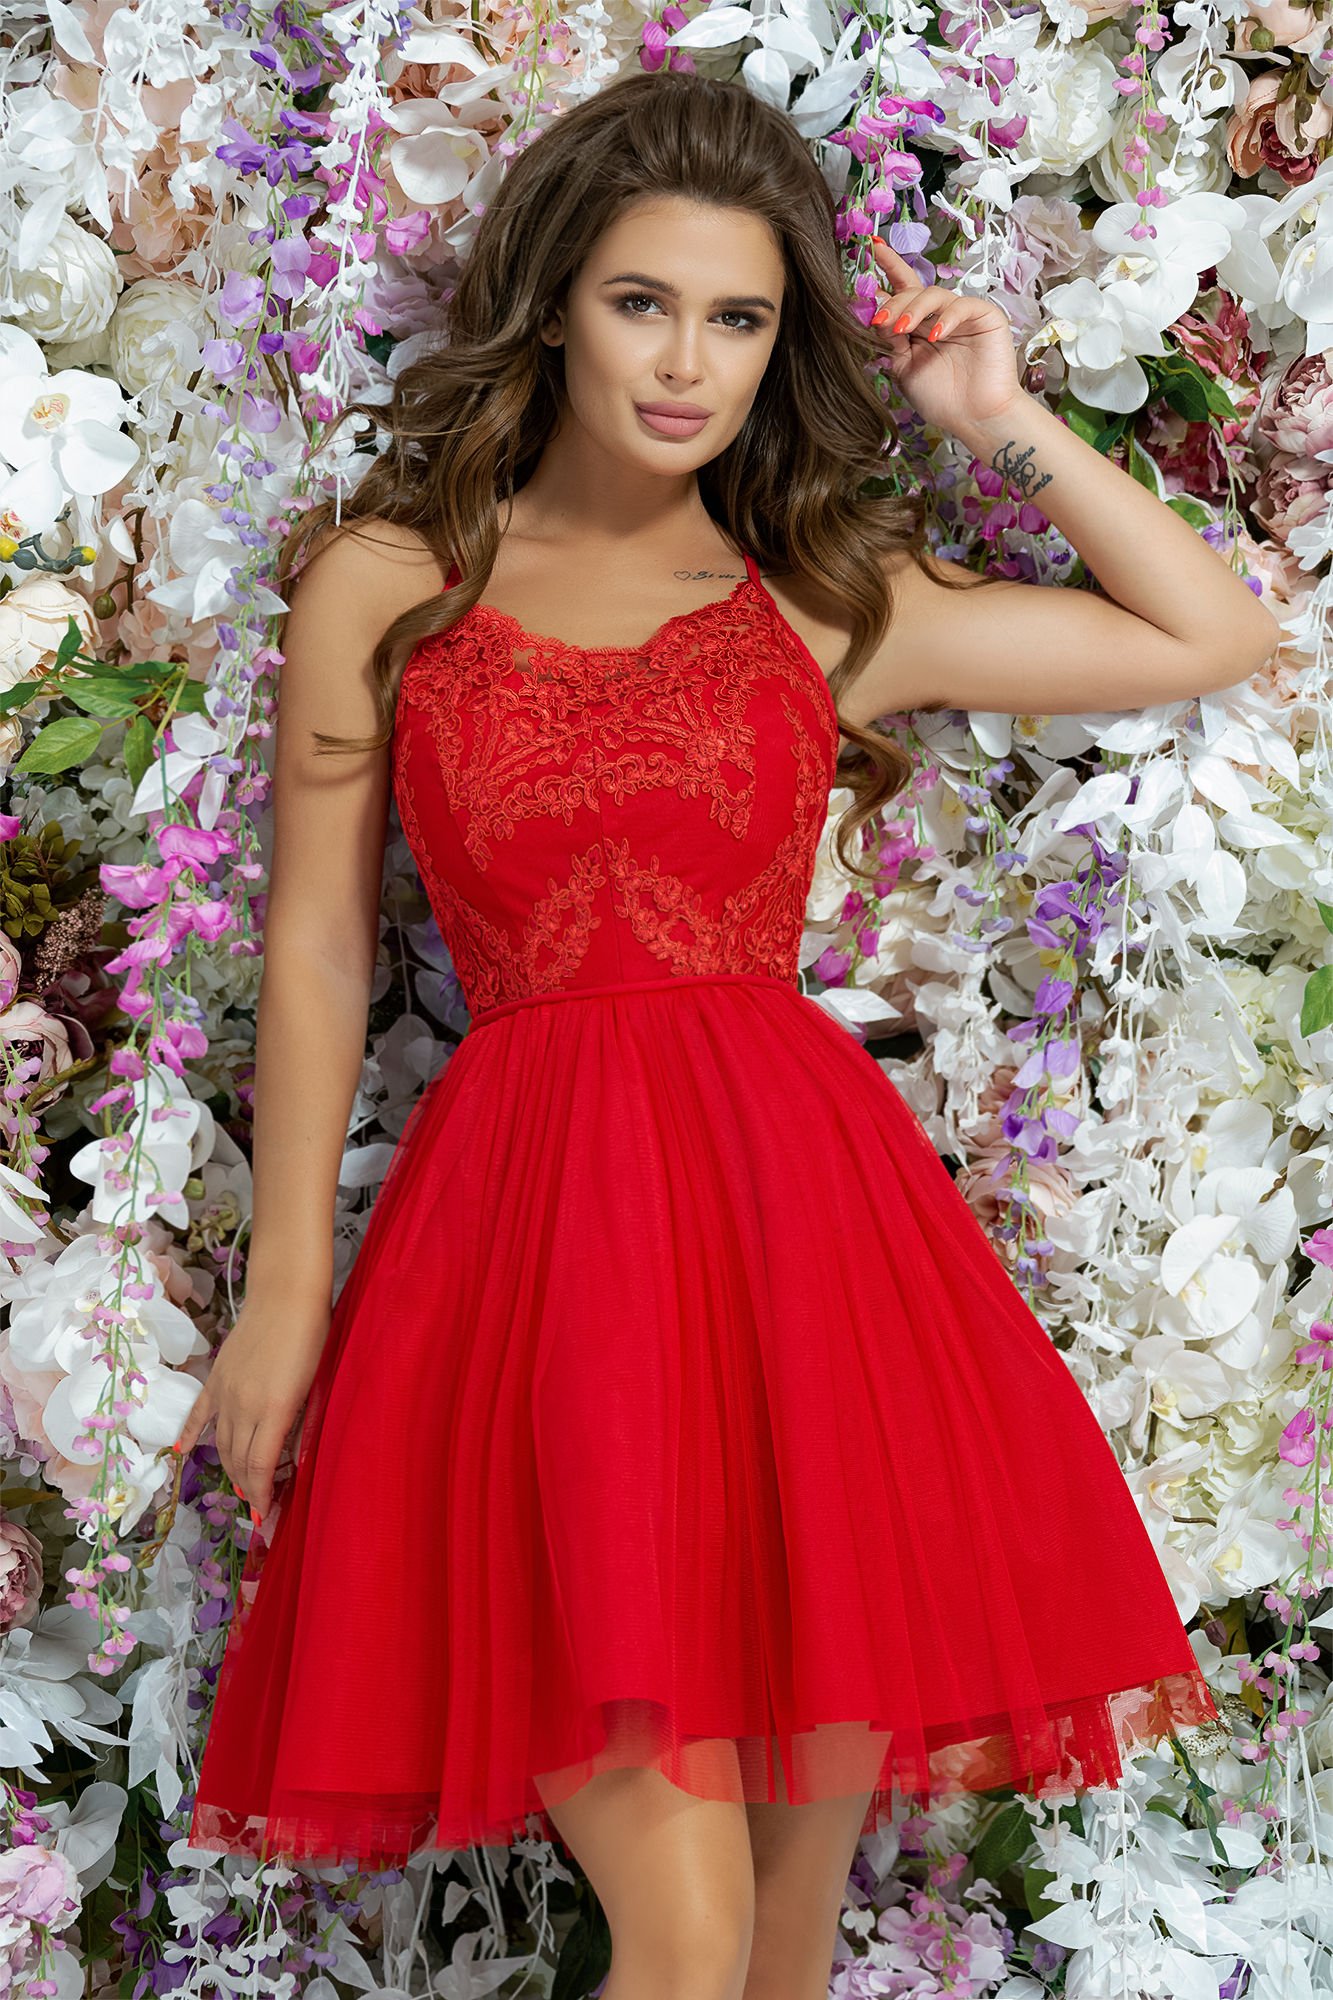 Недорогое праздничное платье. Платье вечернее короткое. Платья вечерный короткая. Красивое красное платье. Девушка в платье красивая.